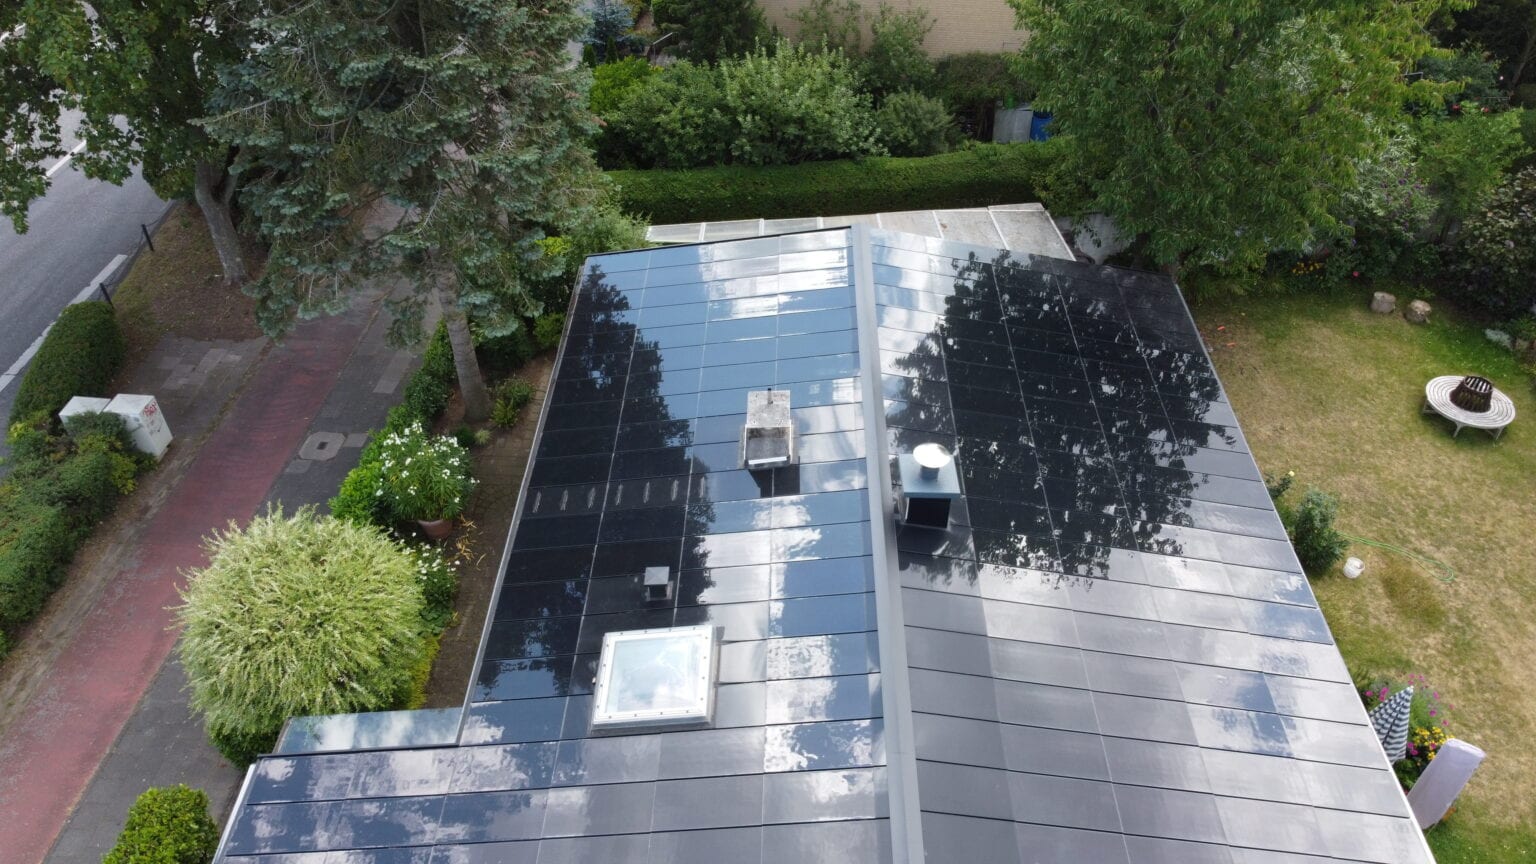 Ennogie-Solardach Bungalow in Köln: Vogelperspektive Dachfläche inklusive Dachfenster und Kamin